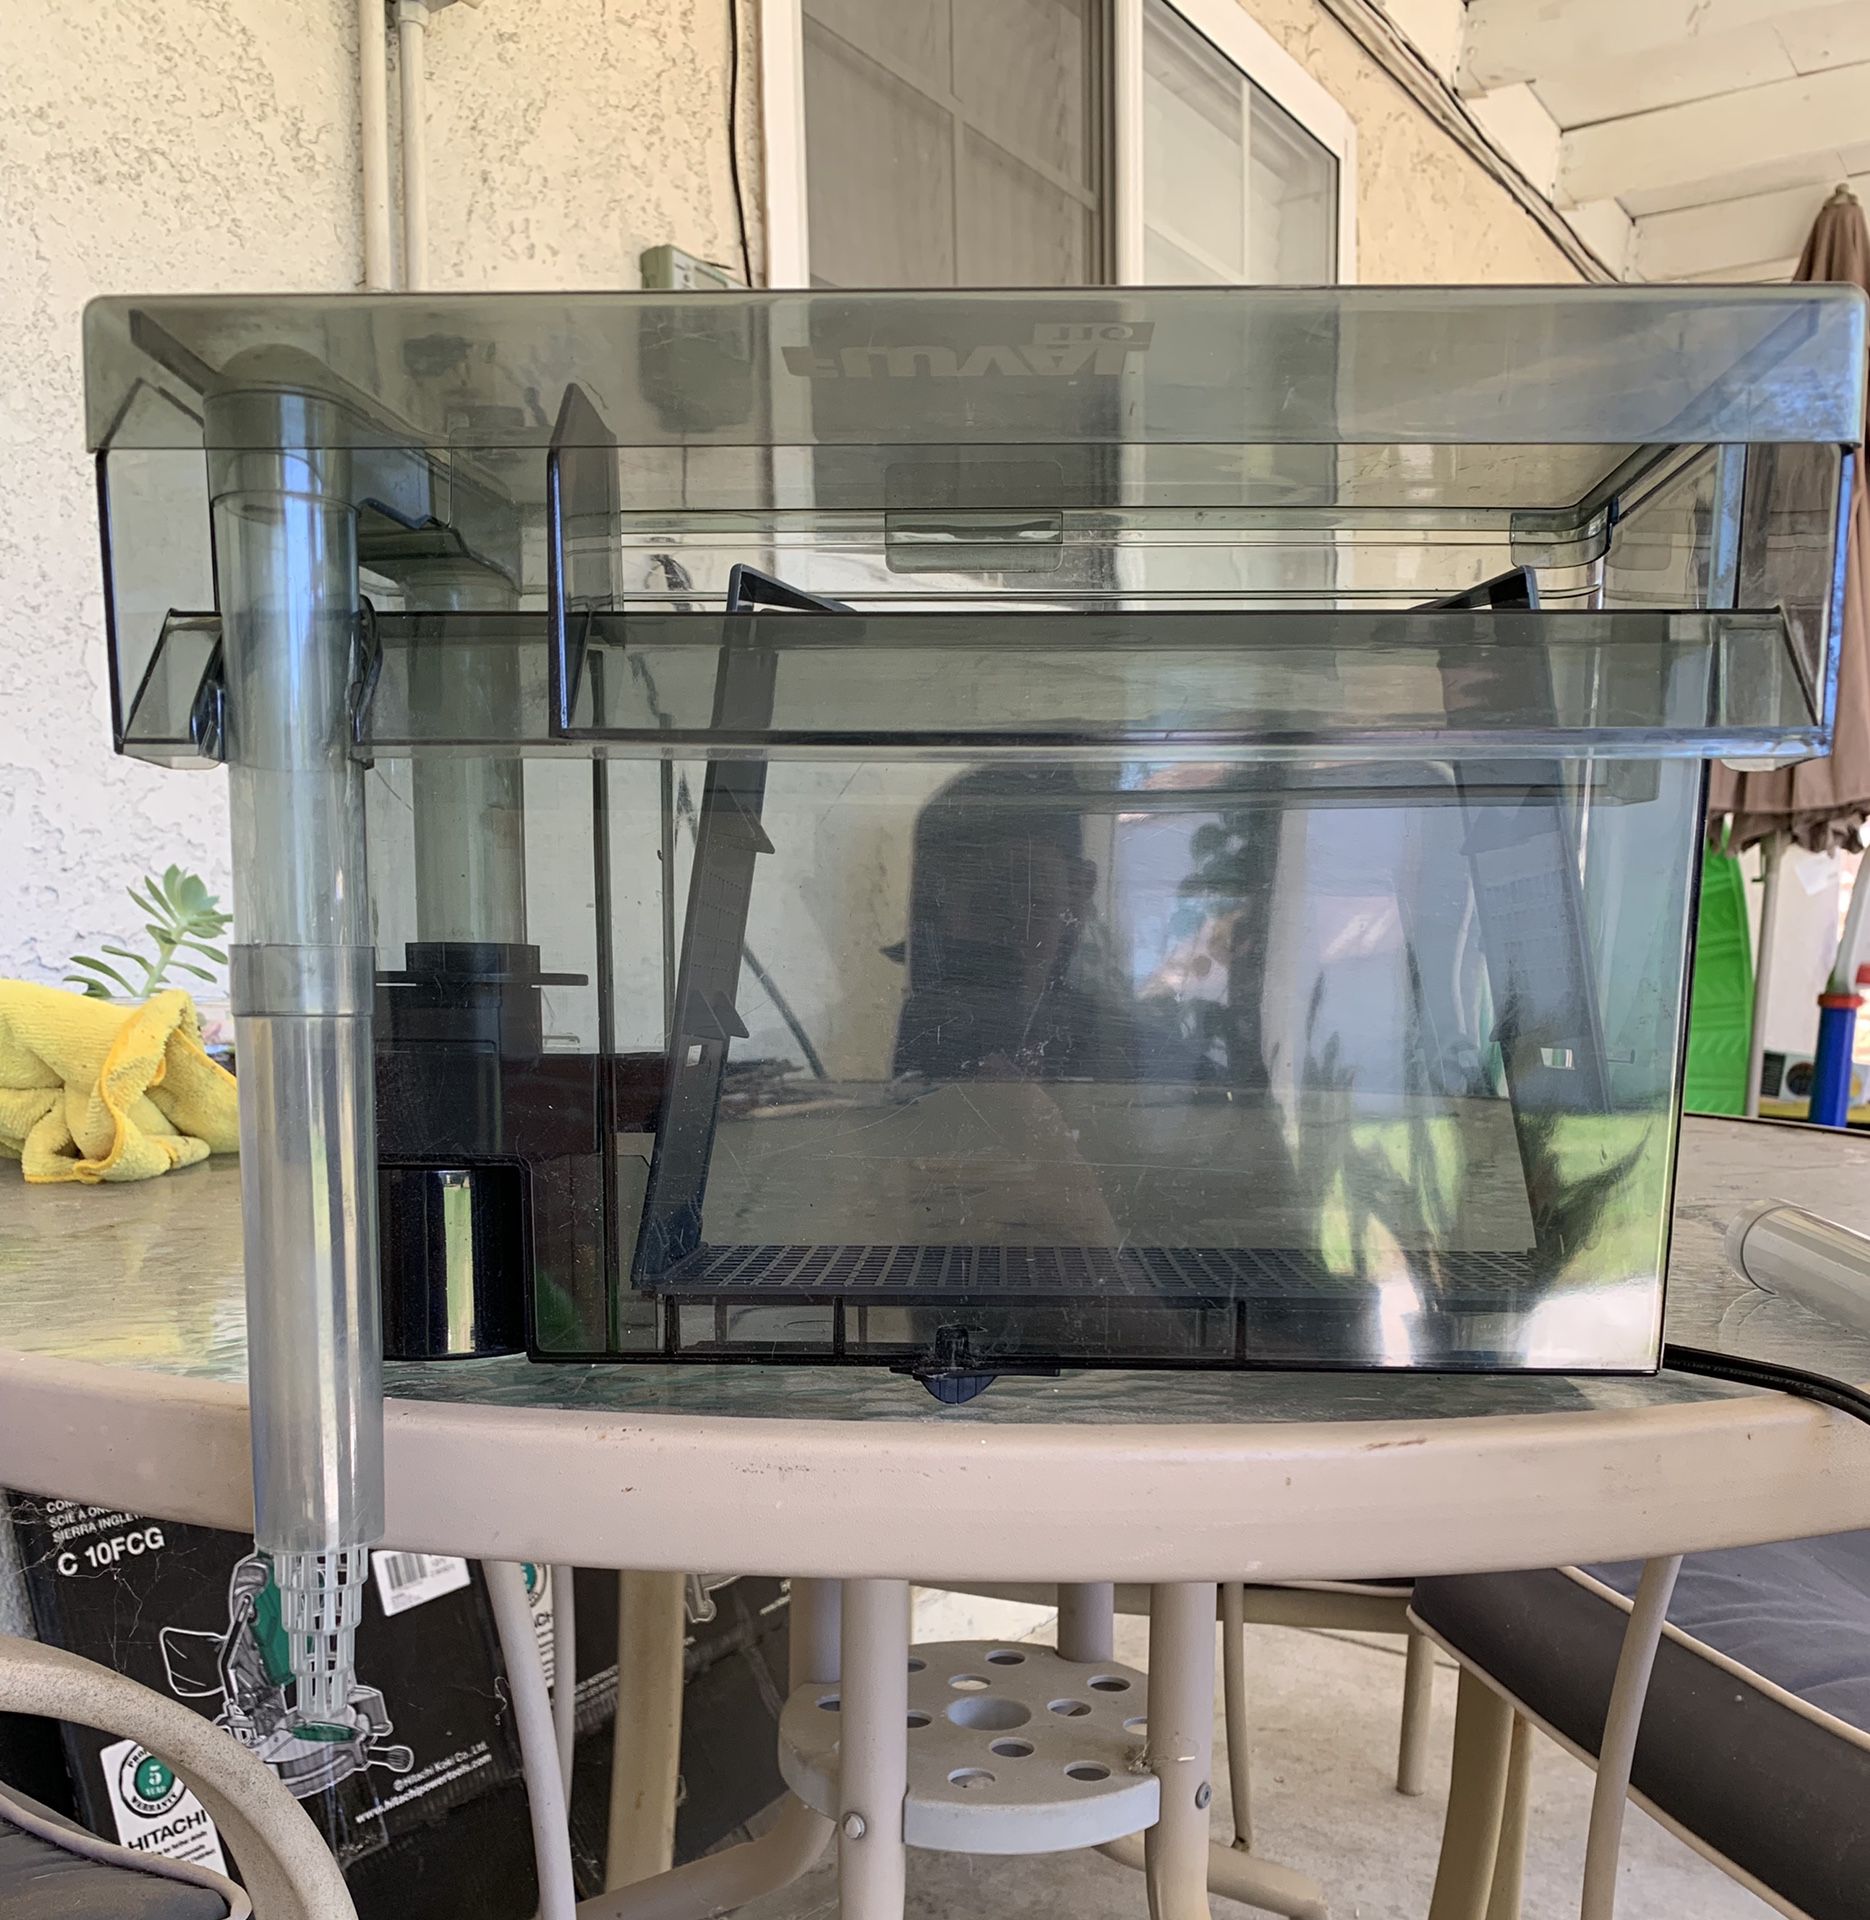 Fluval aquaclear 110 filter for aquarium fish tank